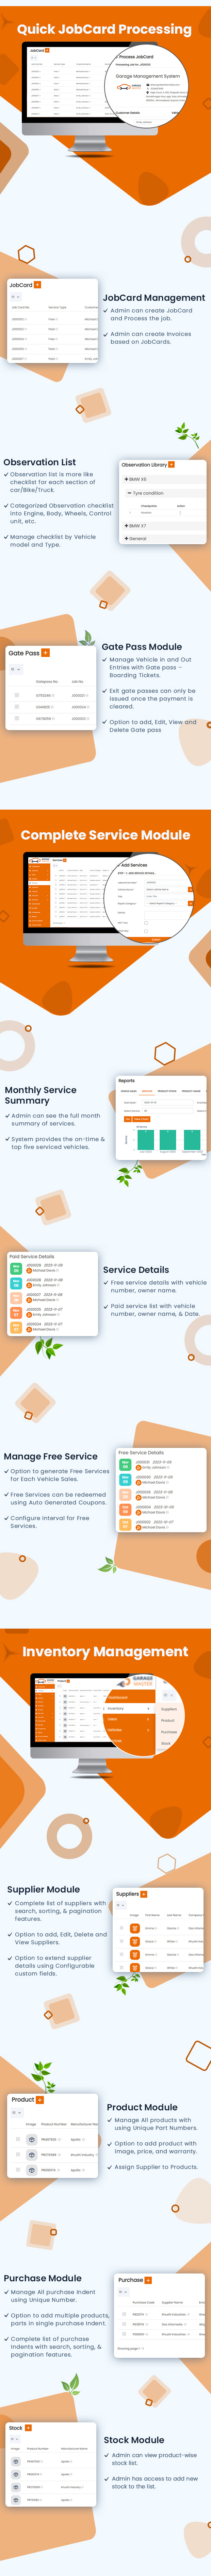  Auto Service software